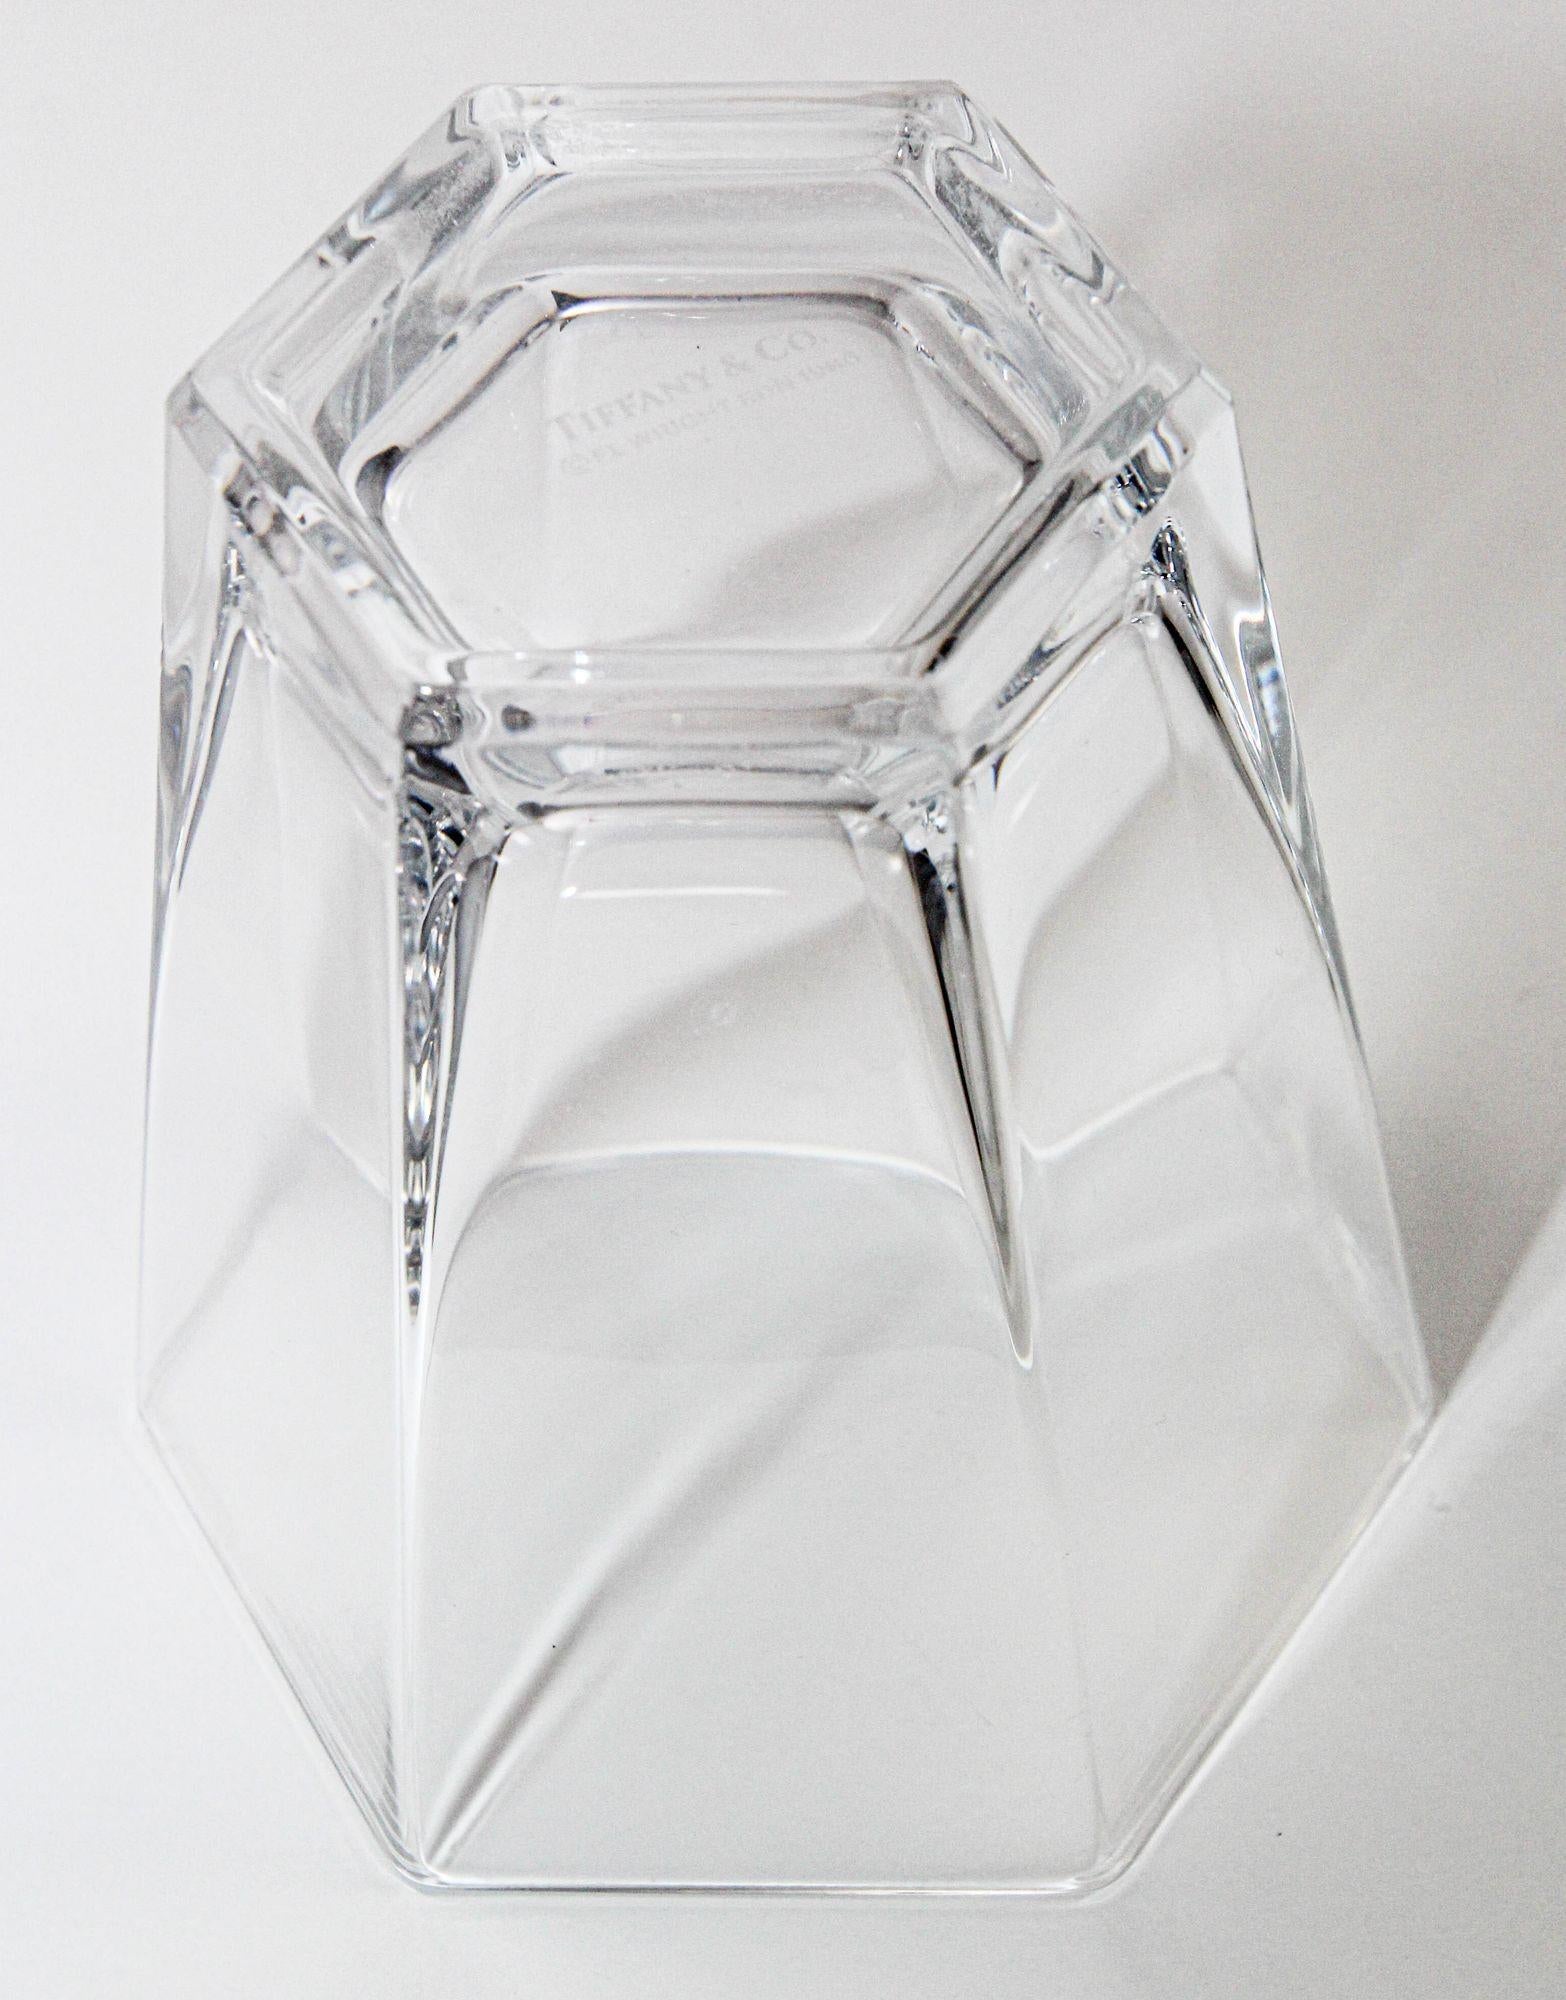 Ein sehr schwer zu findender Satz von 4 Frank Lloyd Wright by TIFFANY Crystal Double Old Fashioned Gläsern Barware.
Tiffany & Co. Set aus vier exquisiten Doppel-Trinkgläsern aus Kristall, inspiriert von der architektonischen Brillanz von Frank Lloyd